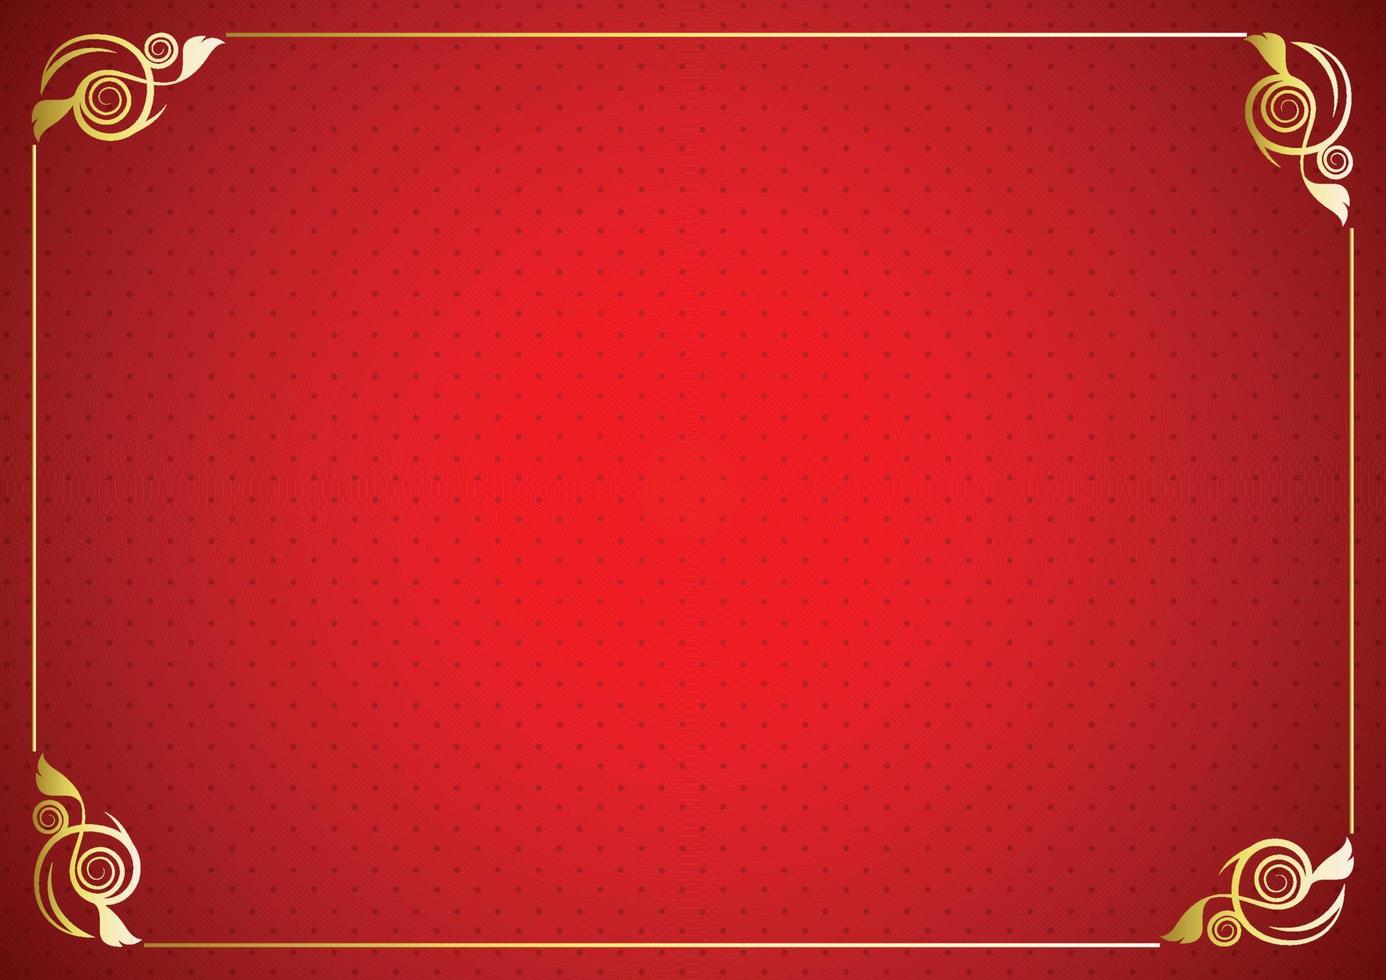 plantilla de vector de tarjeta de felicitación de ornamento vintage. invitación de lujo retro, papel certificado, marco dorado sobre fondo rojo.